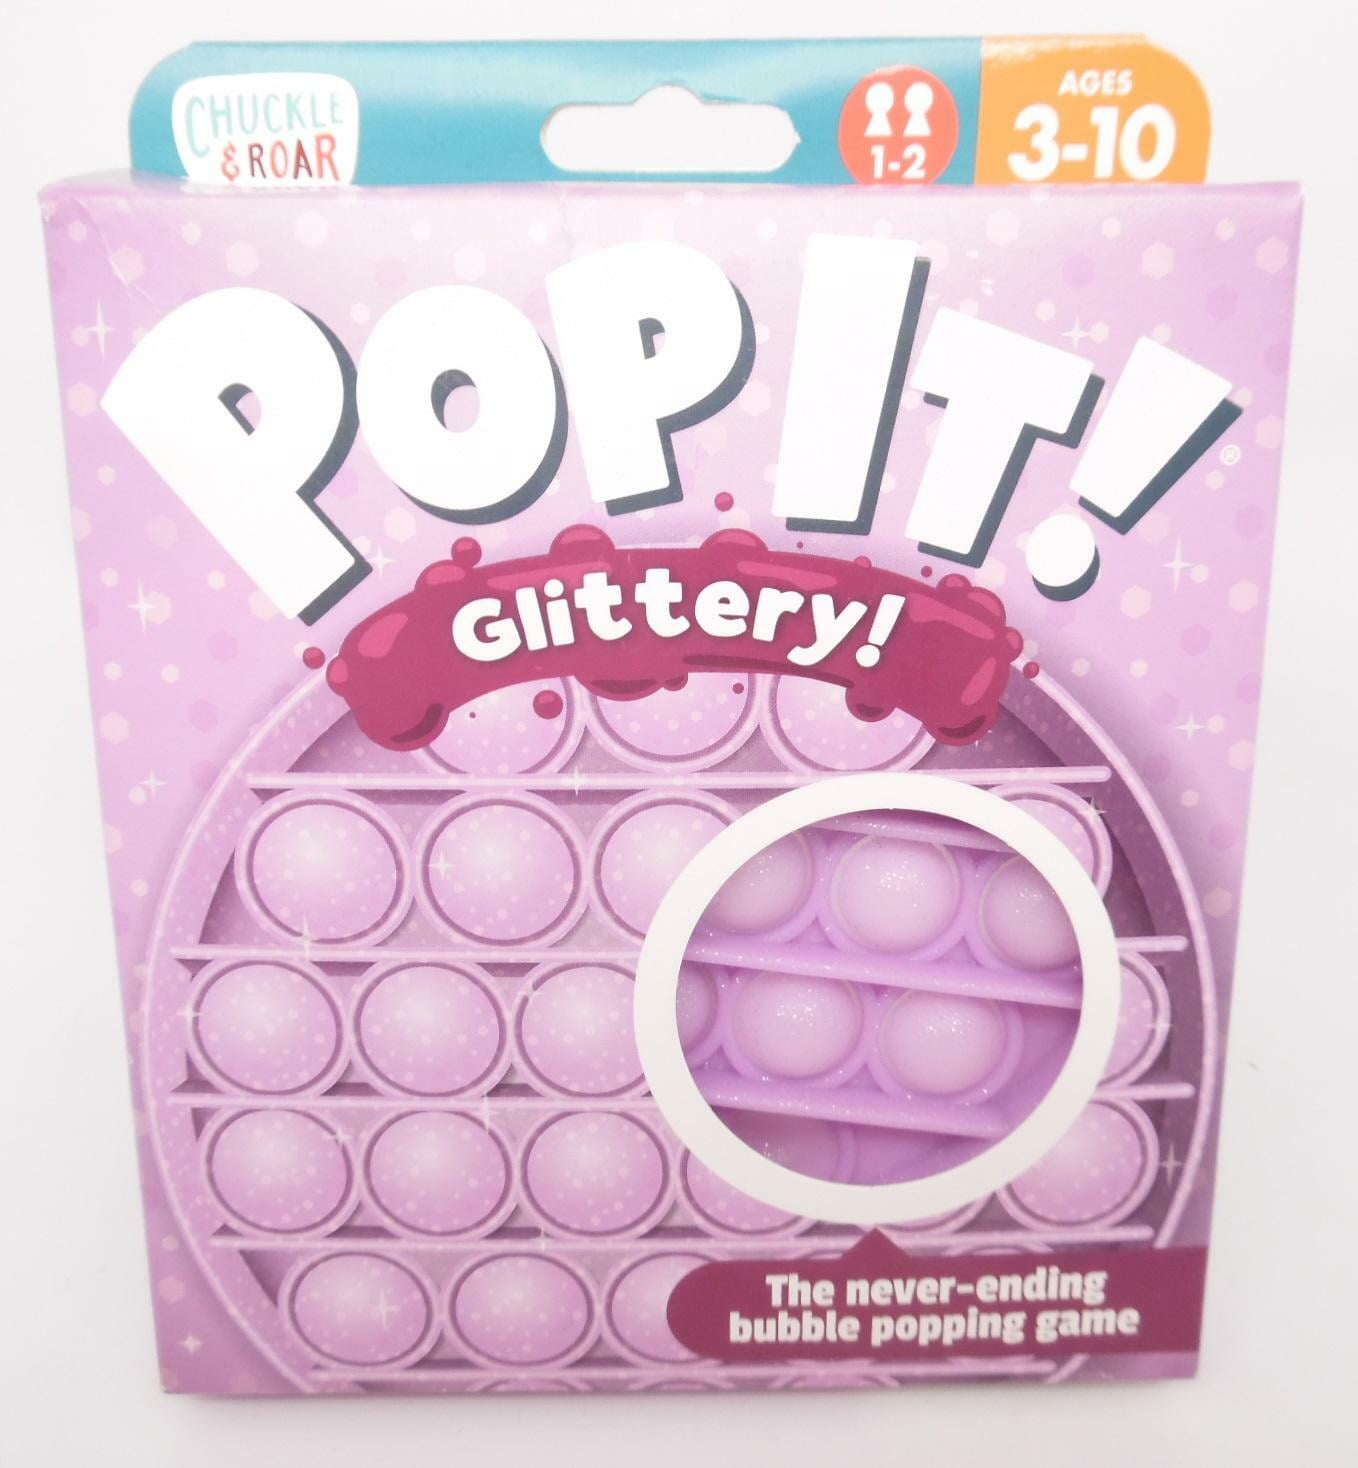 Chuckle & Roar Pop It! Pink Glittery Bubble Popping Sensory Game, Fidget Toy